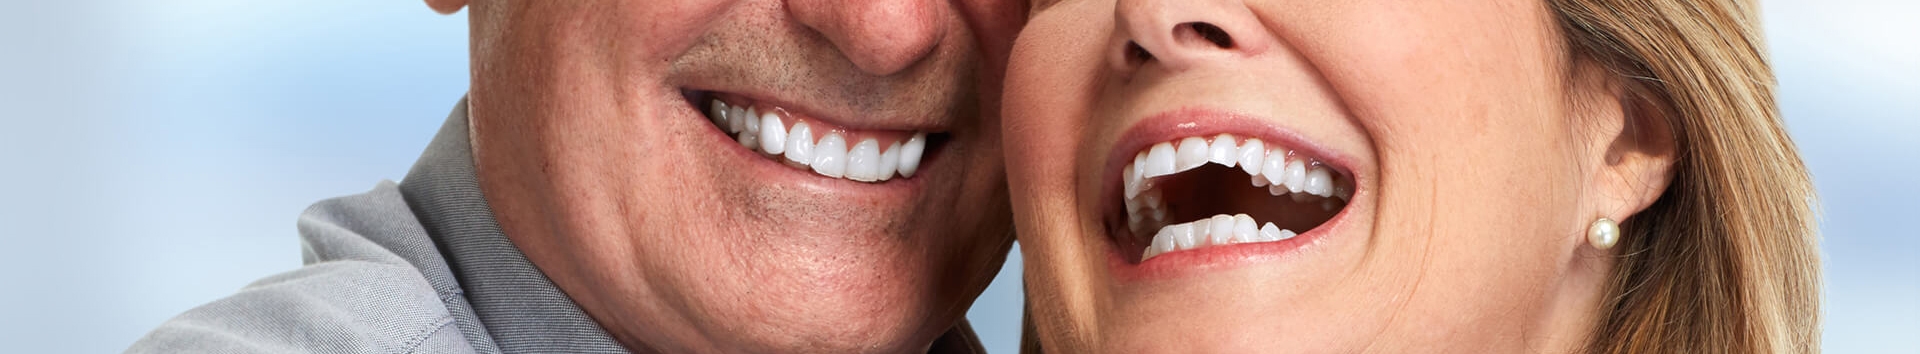 Implantes dentários: Ganhe autoestima com este tratamento